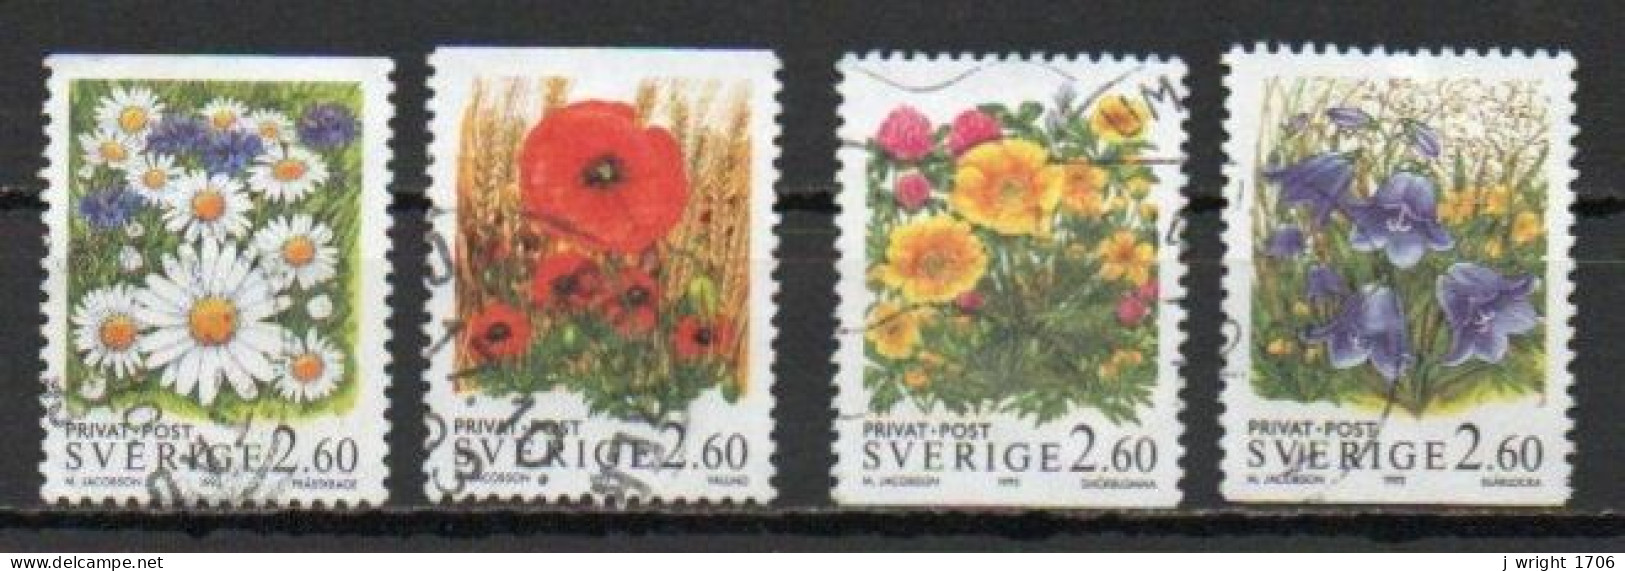 Sweden, 1993, Rebate Stamps/Flowers, Set, USED - Gebruikt